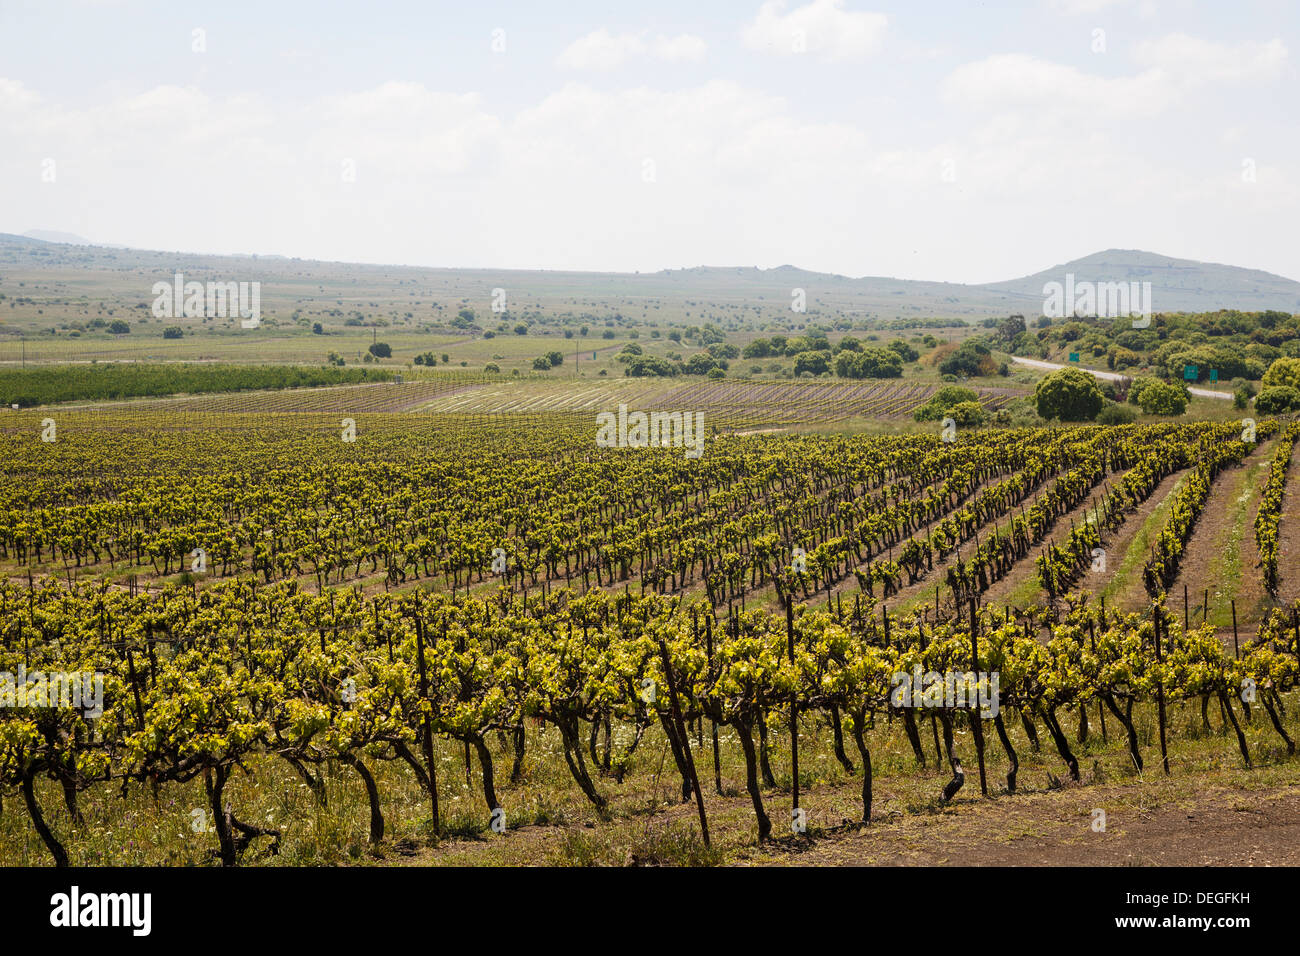 Vignoble dans le plateau du Golan, Israël, Moyen Orient Banque D'Images